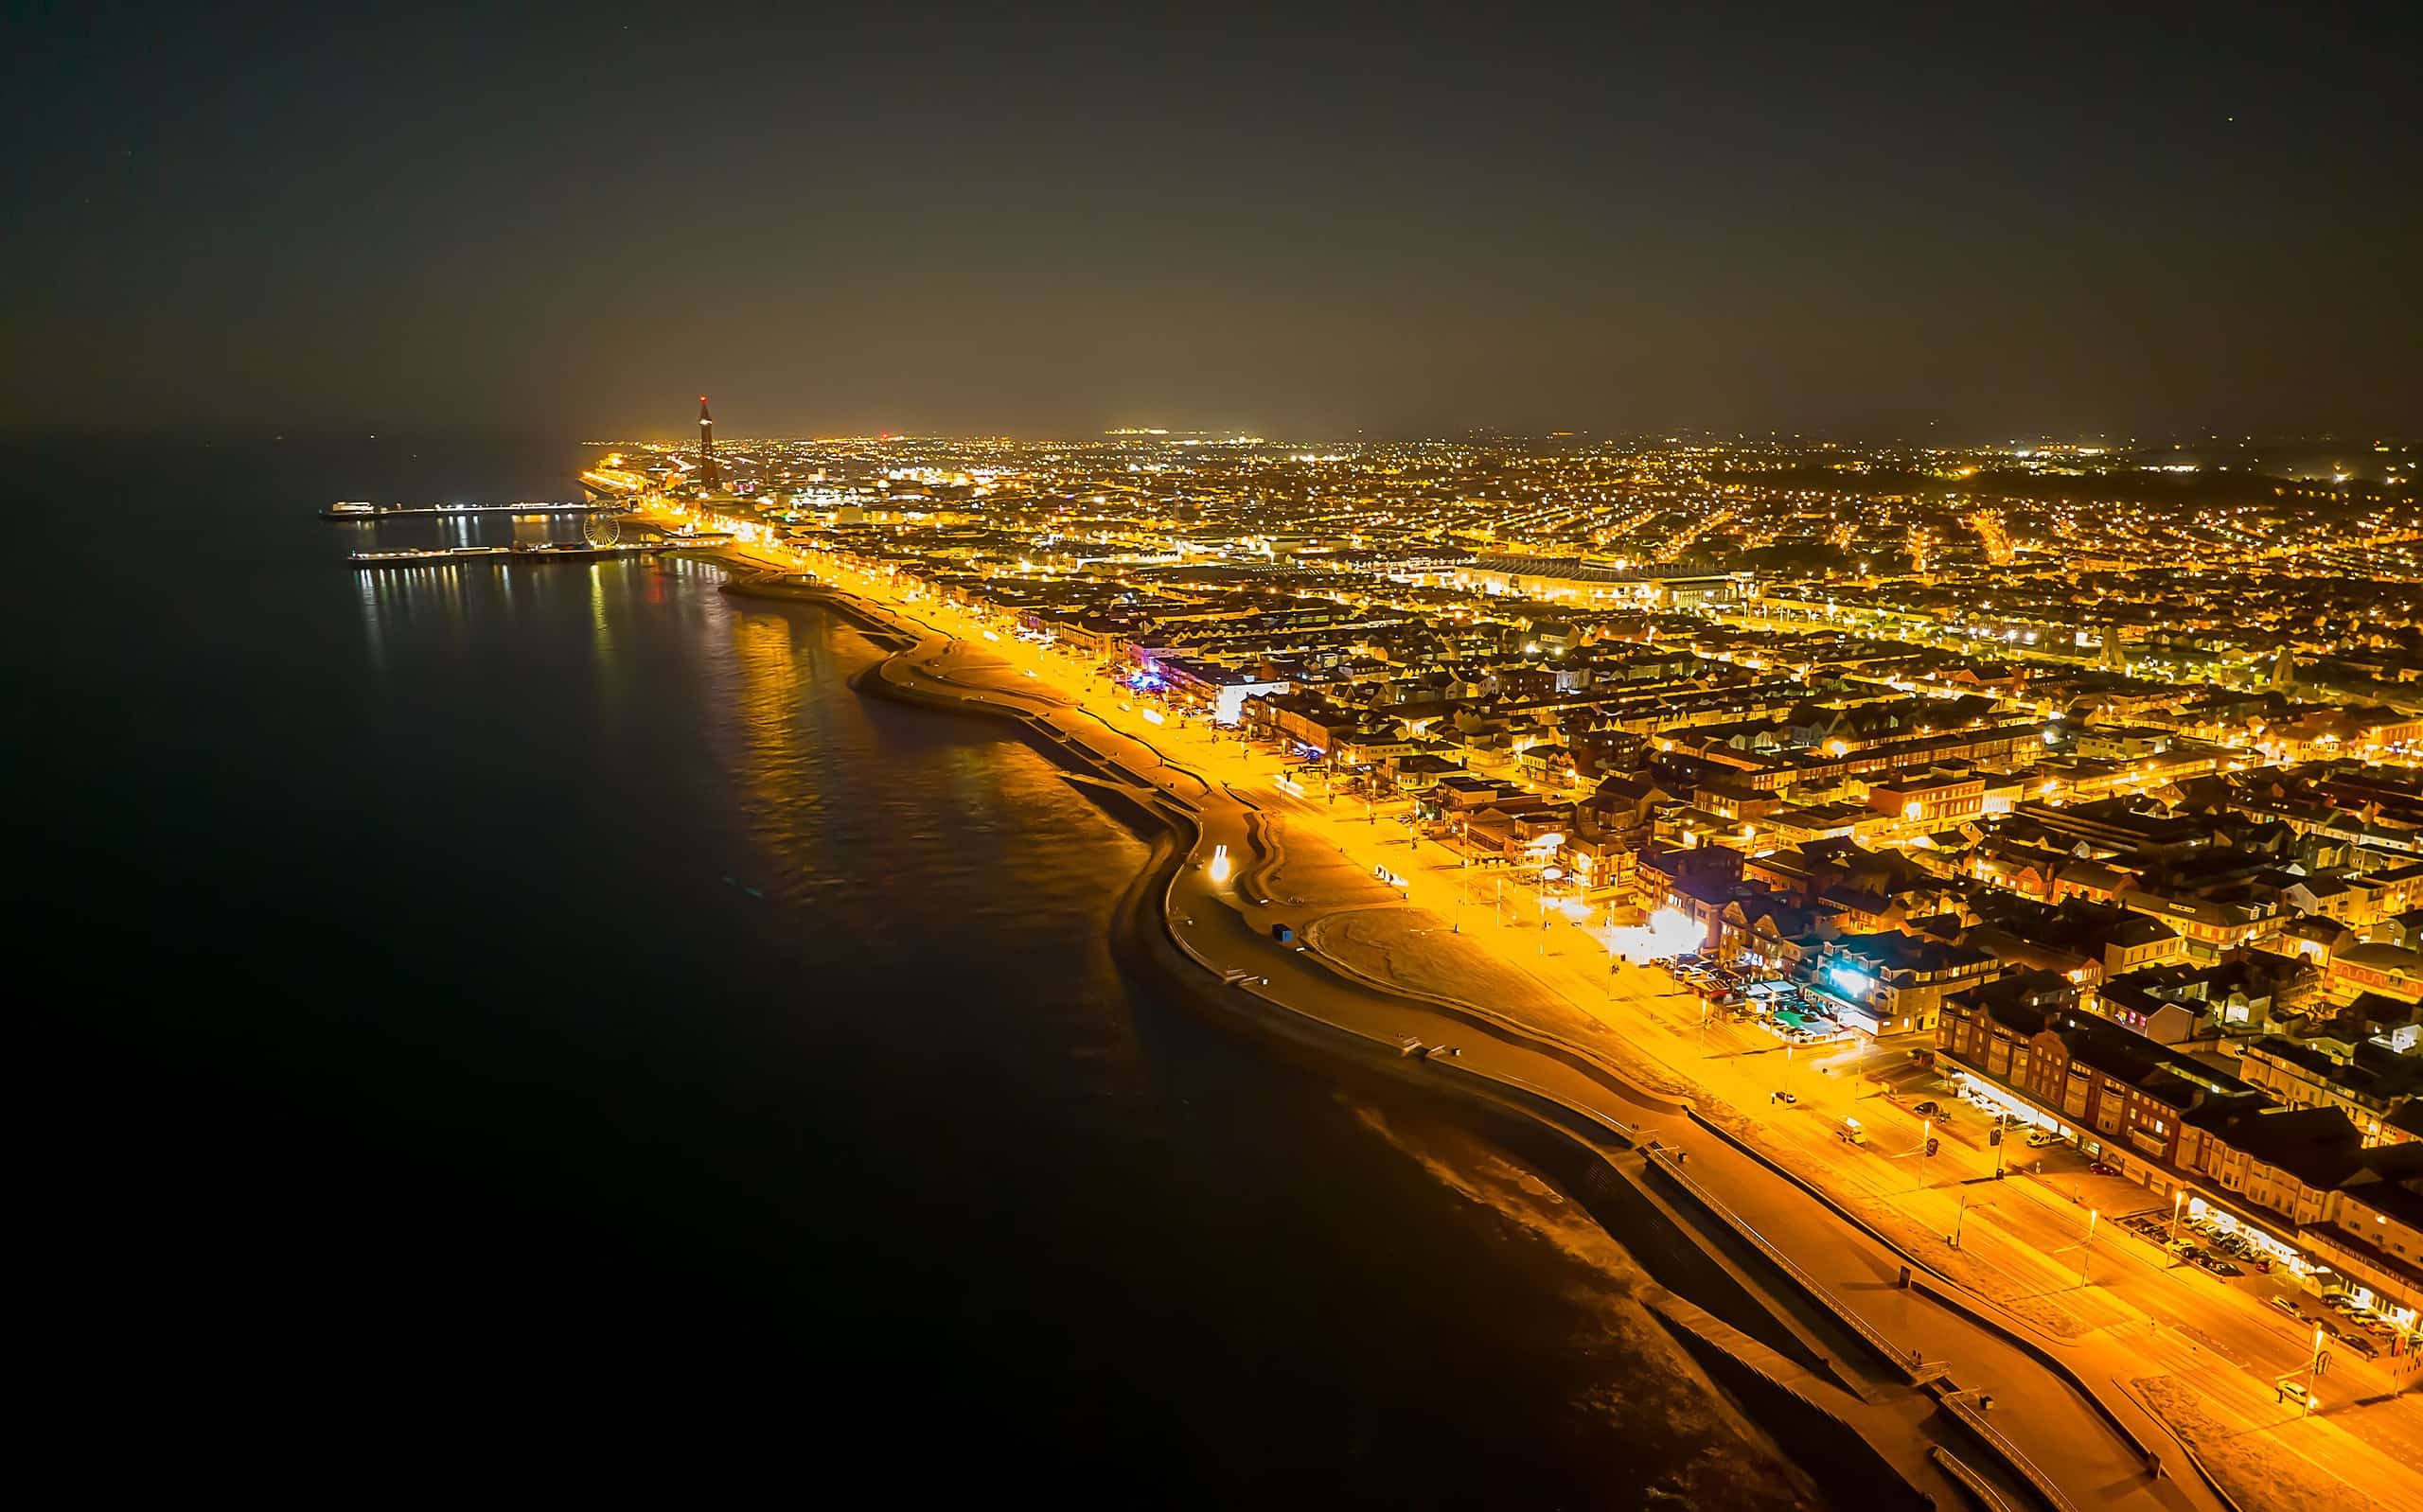 Ripresa aerea della città di Blackpool illuminata con luci di notte in Inghilterra